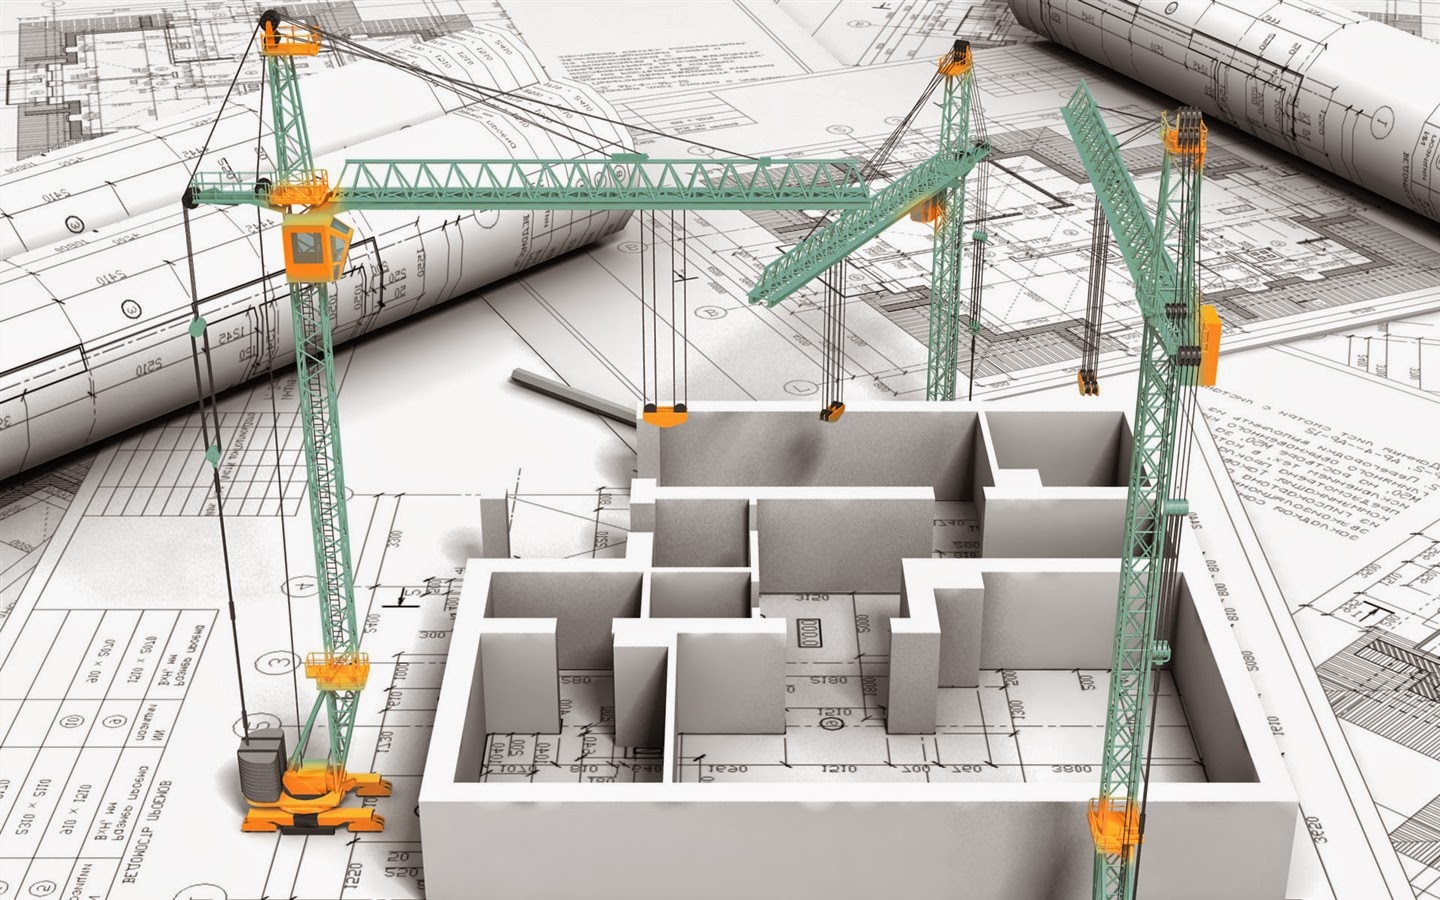 Cho thuê mua nhà, công trình xây dựng phải tuân thủ nguyên tắc gì?